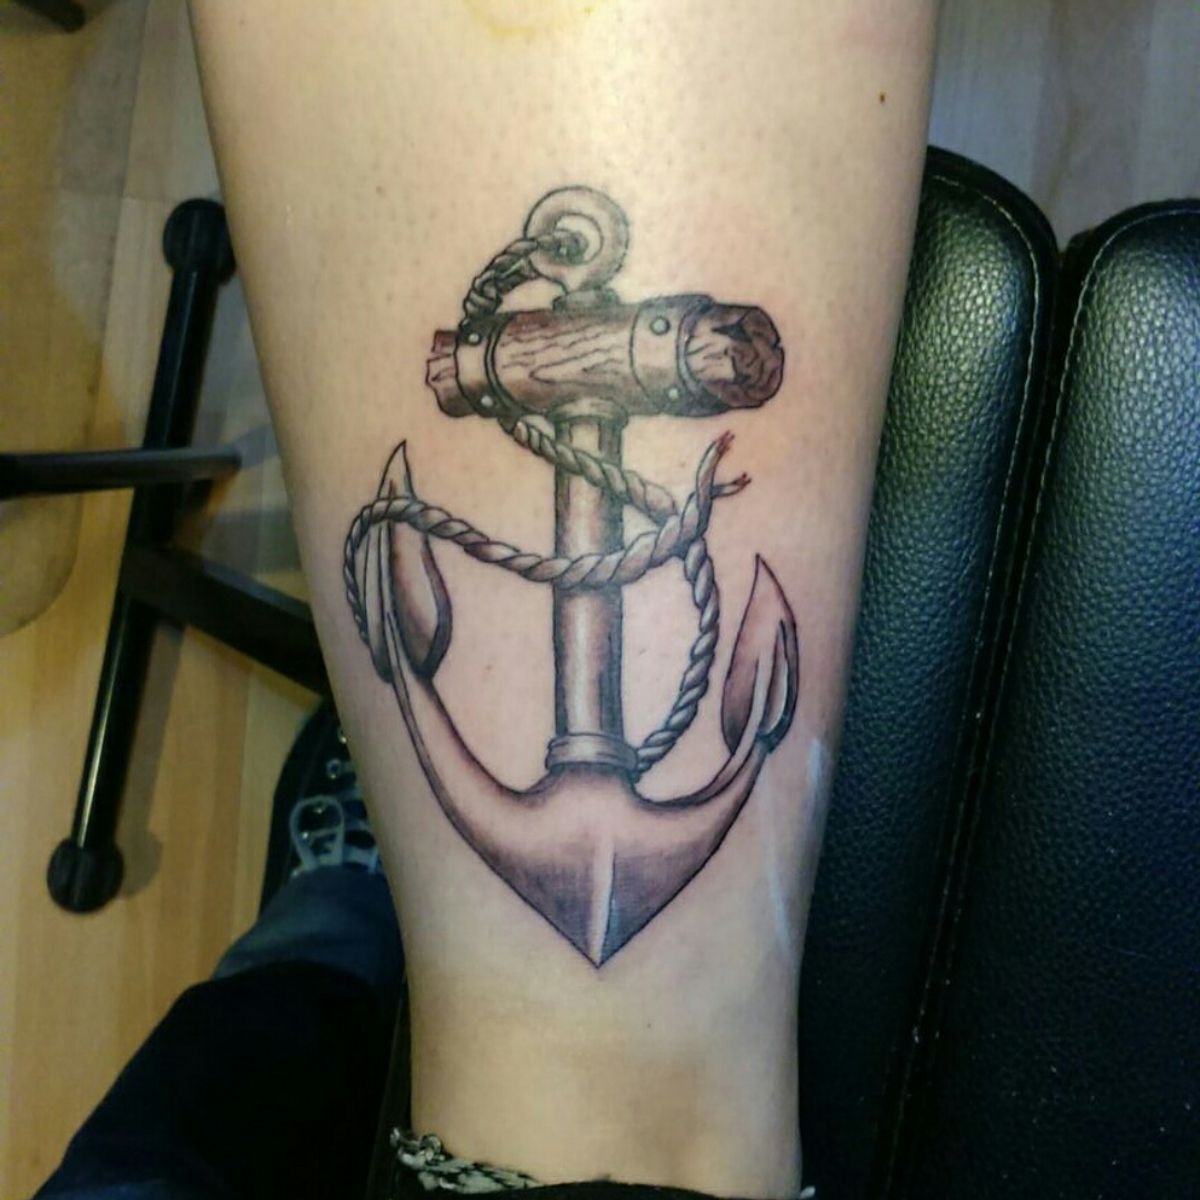 Tattoo uploaded by Oliver Twist • Tattoodo